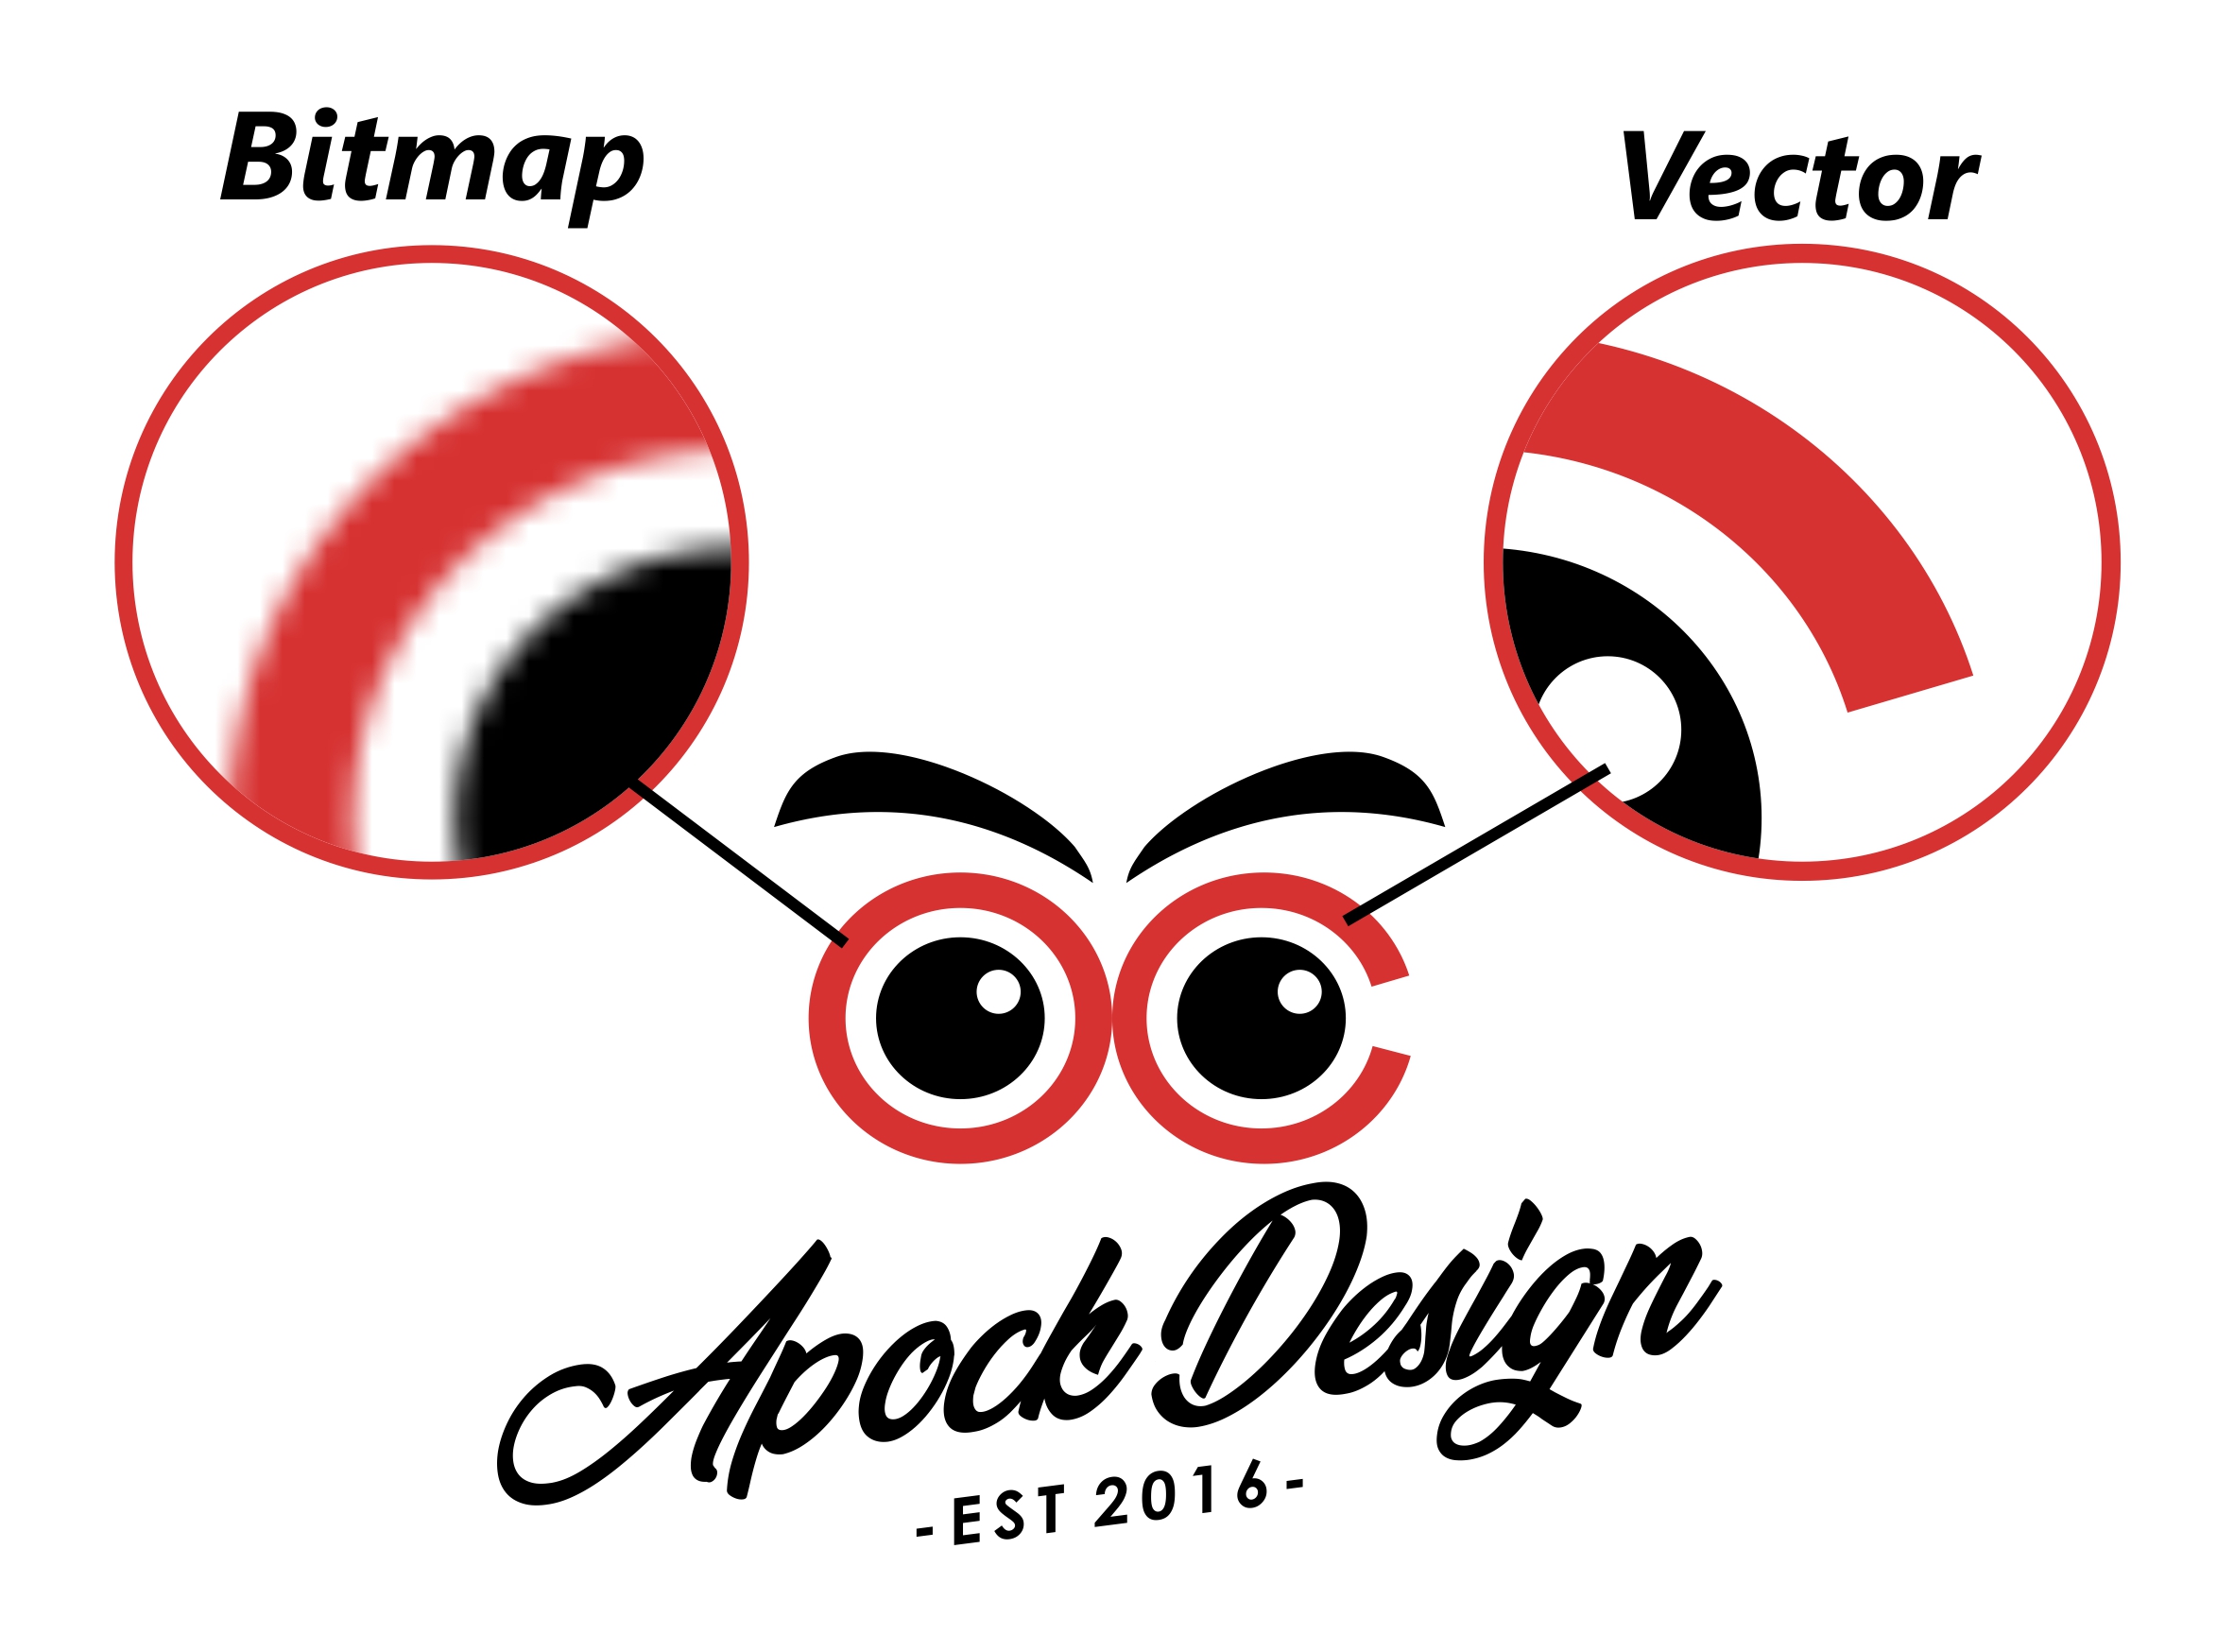 Apa itu Vector? | Pengertian Vector dalam Desain Grafis | Apock Design